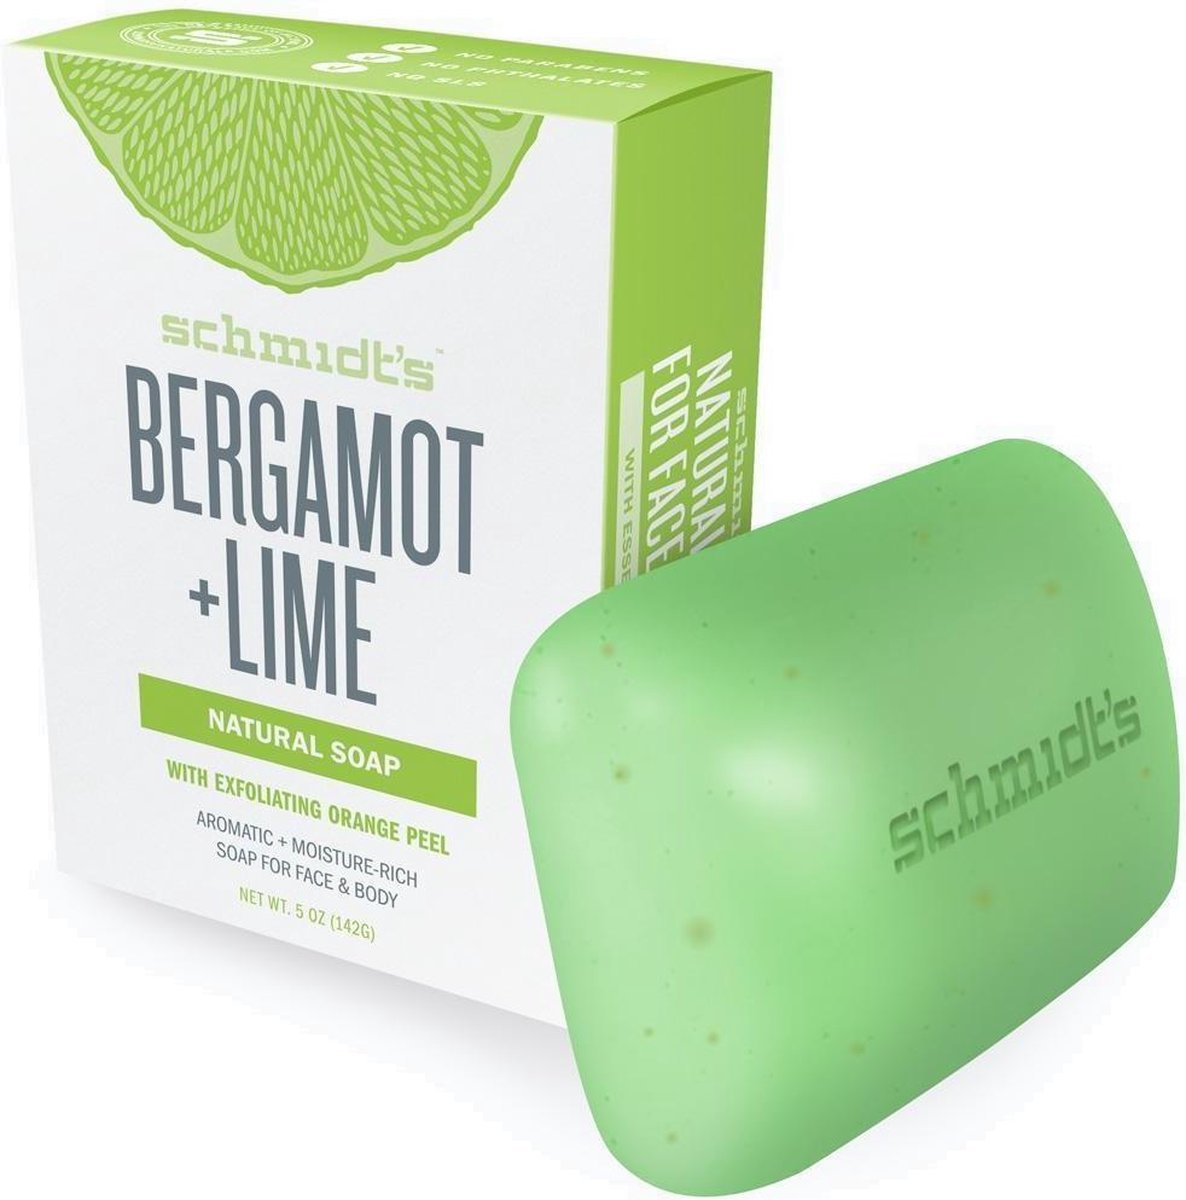 Schmidt's Bergamot + Lime Natural Soap Bar - 142 g